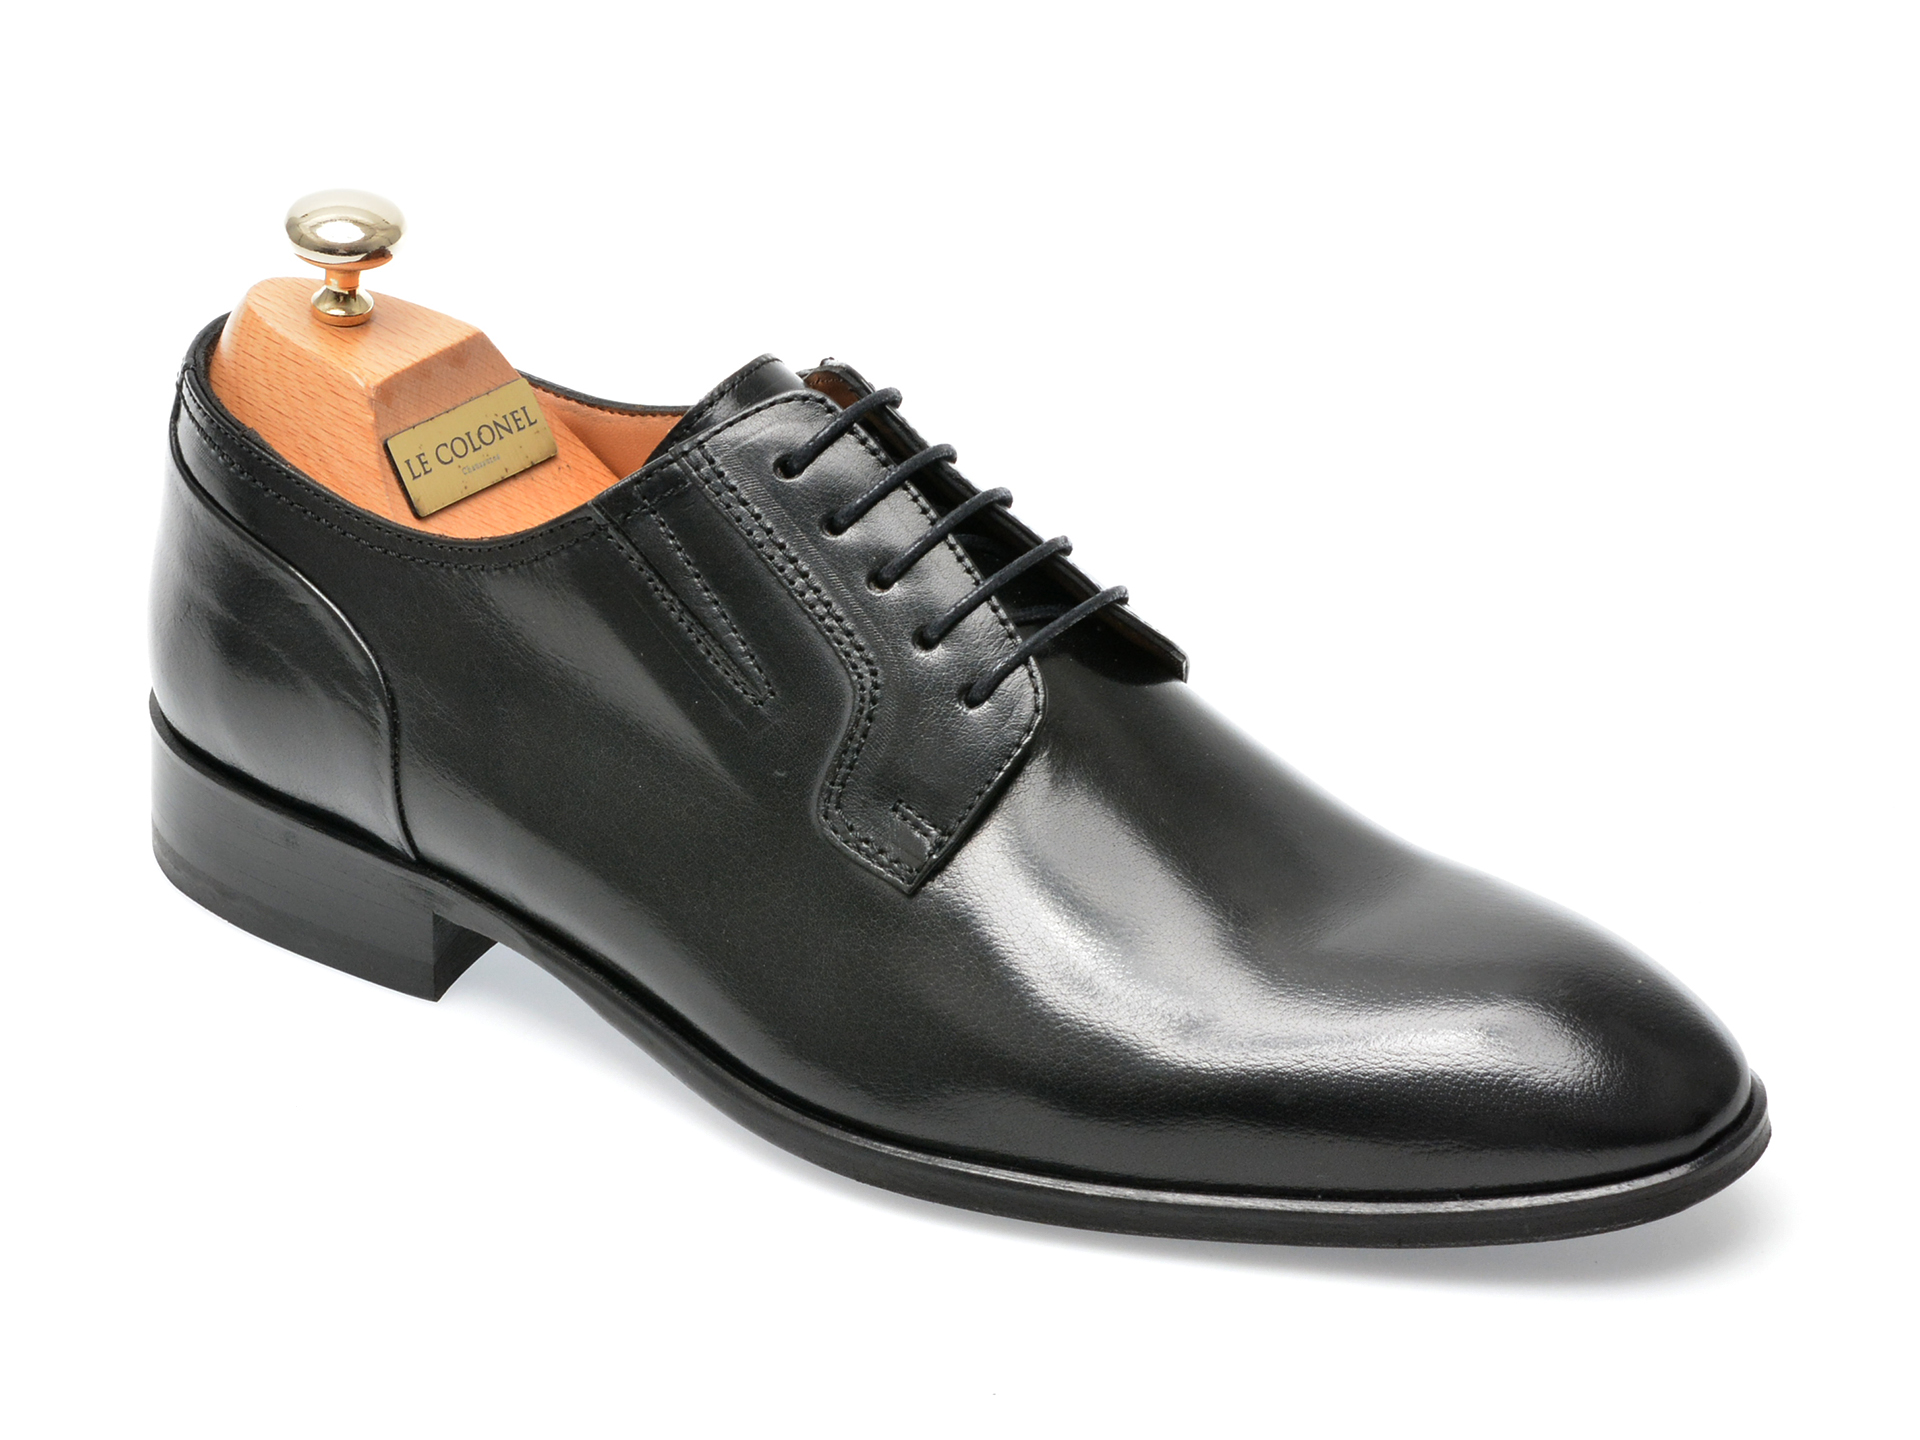 Pantofi LE COLONEL negri, 327130, din piele naturala Le Colonel